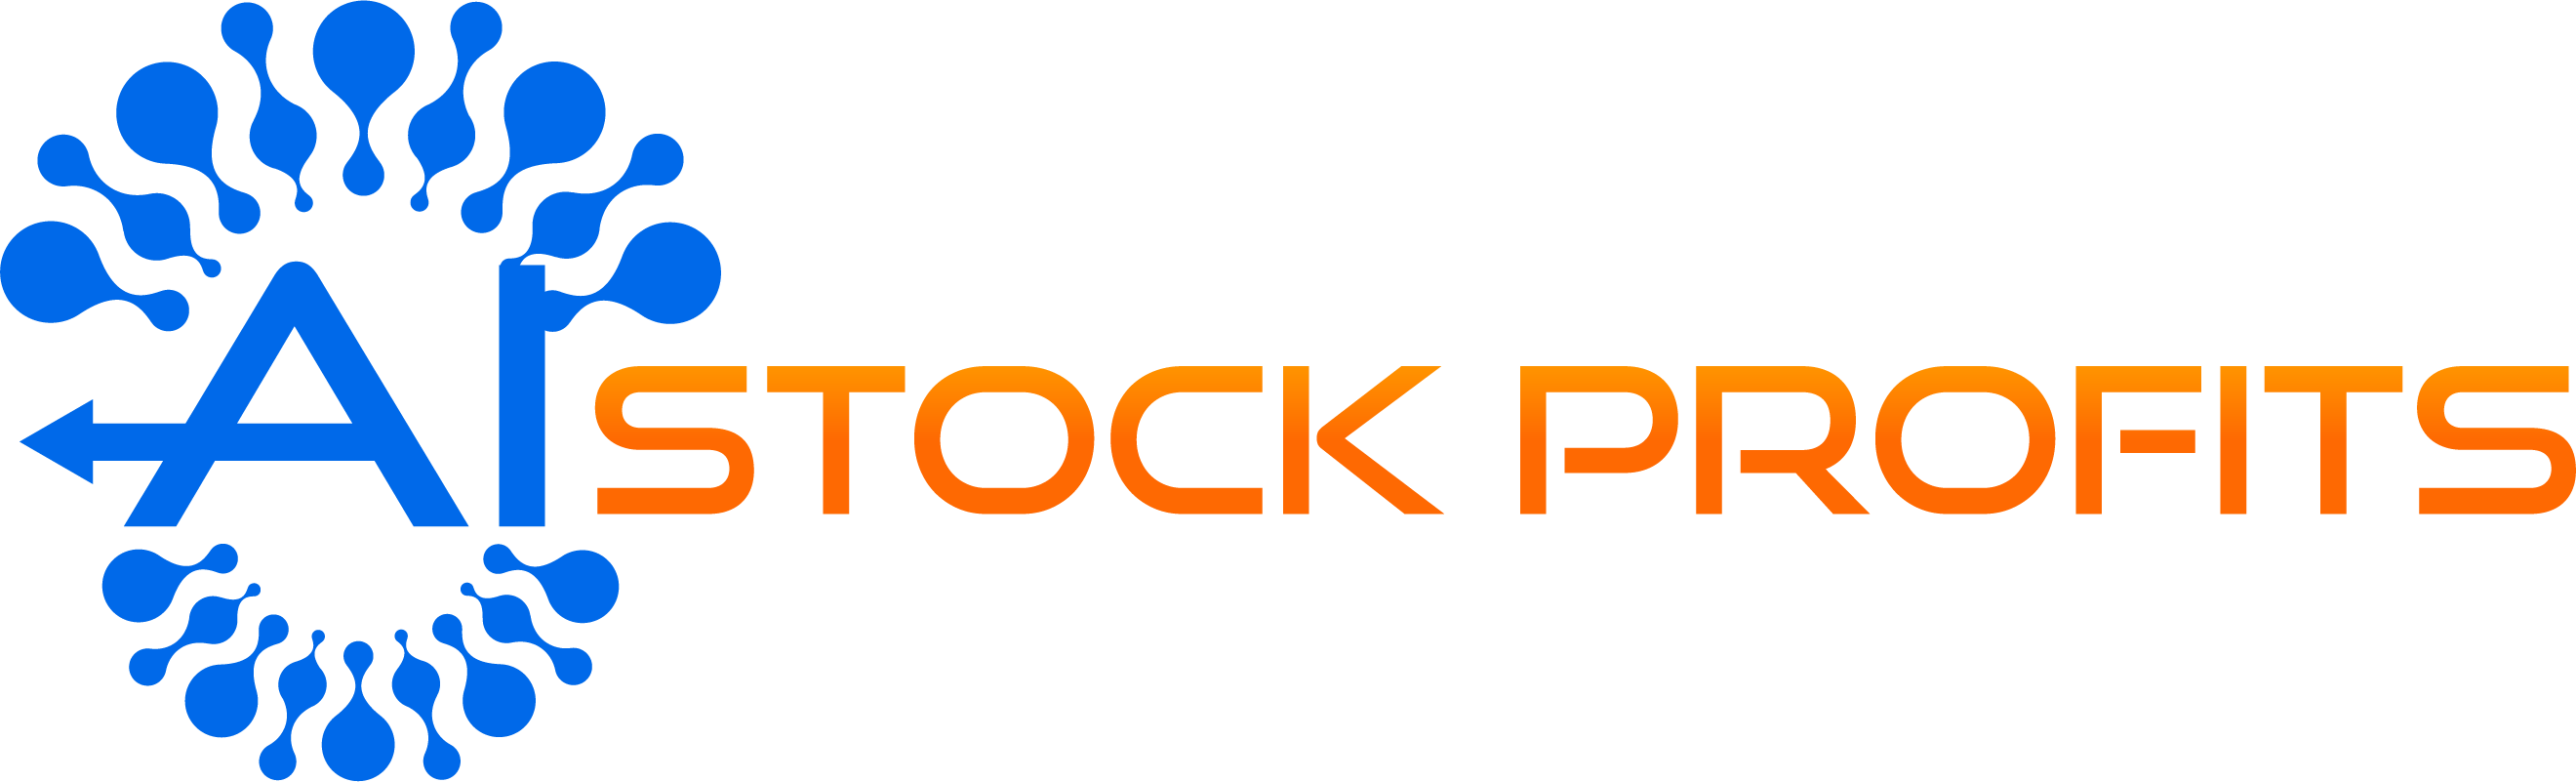 Ai Stock Profit App - 지금 무료 계좌 개설